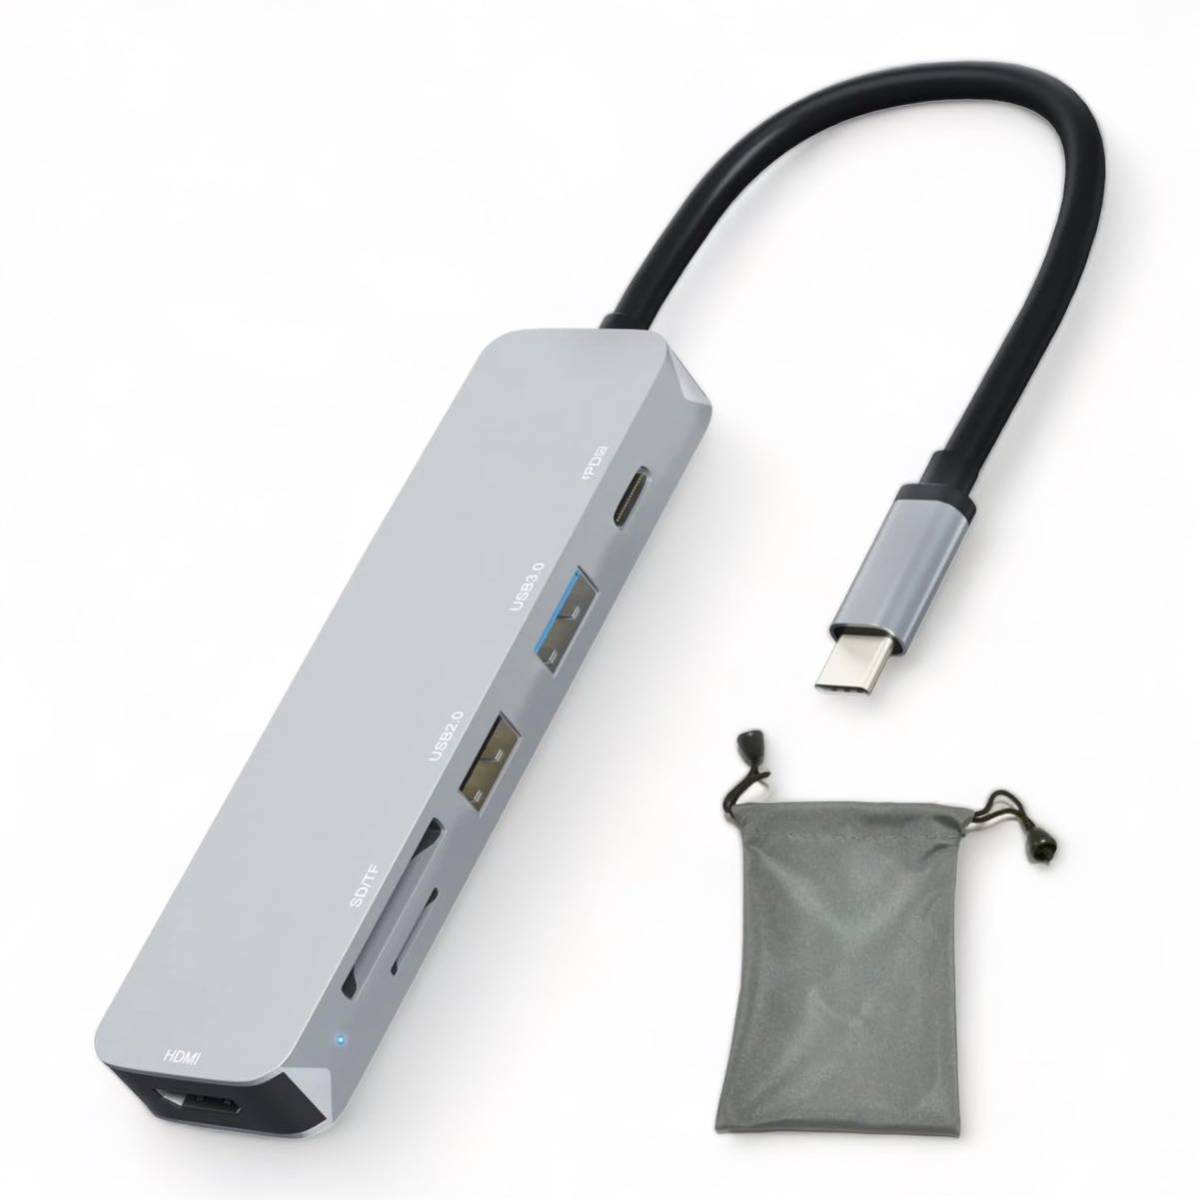 USB C ハブ, USBハブ マルチポート C アダプター 6in1 USB ハブ 4K@30 Type c HDMI出力+SD/TF+USB 3.0+USB 2.0 データ転送ポート